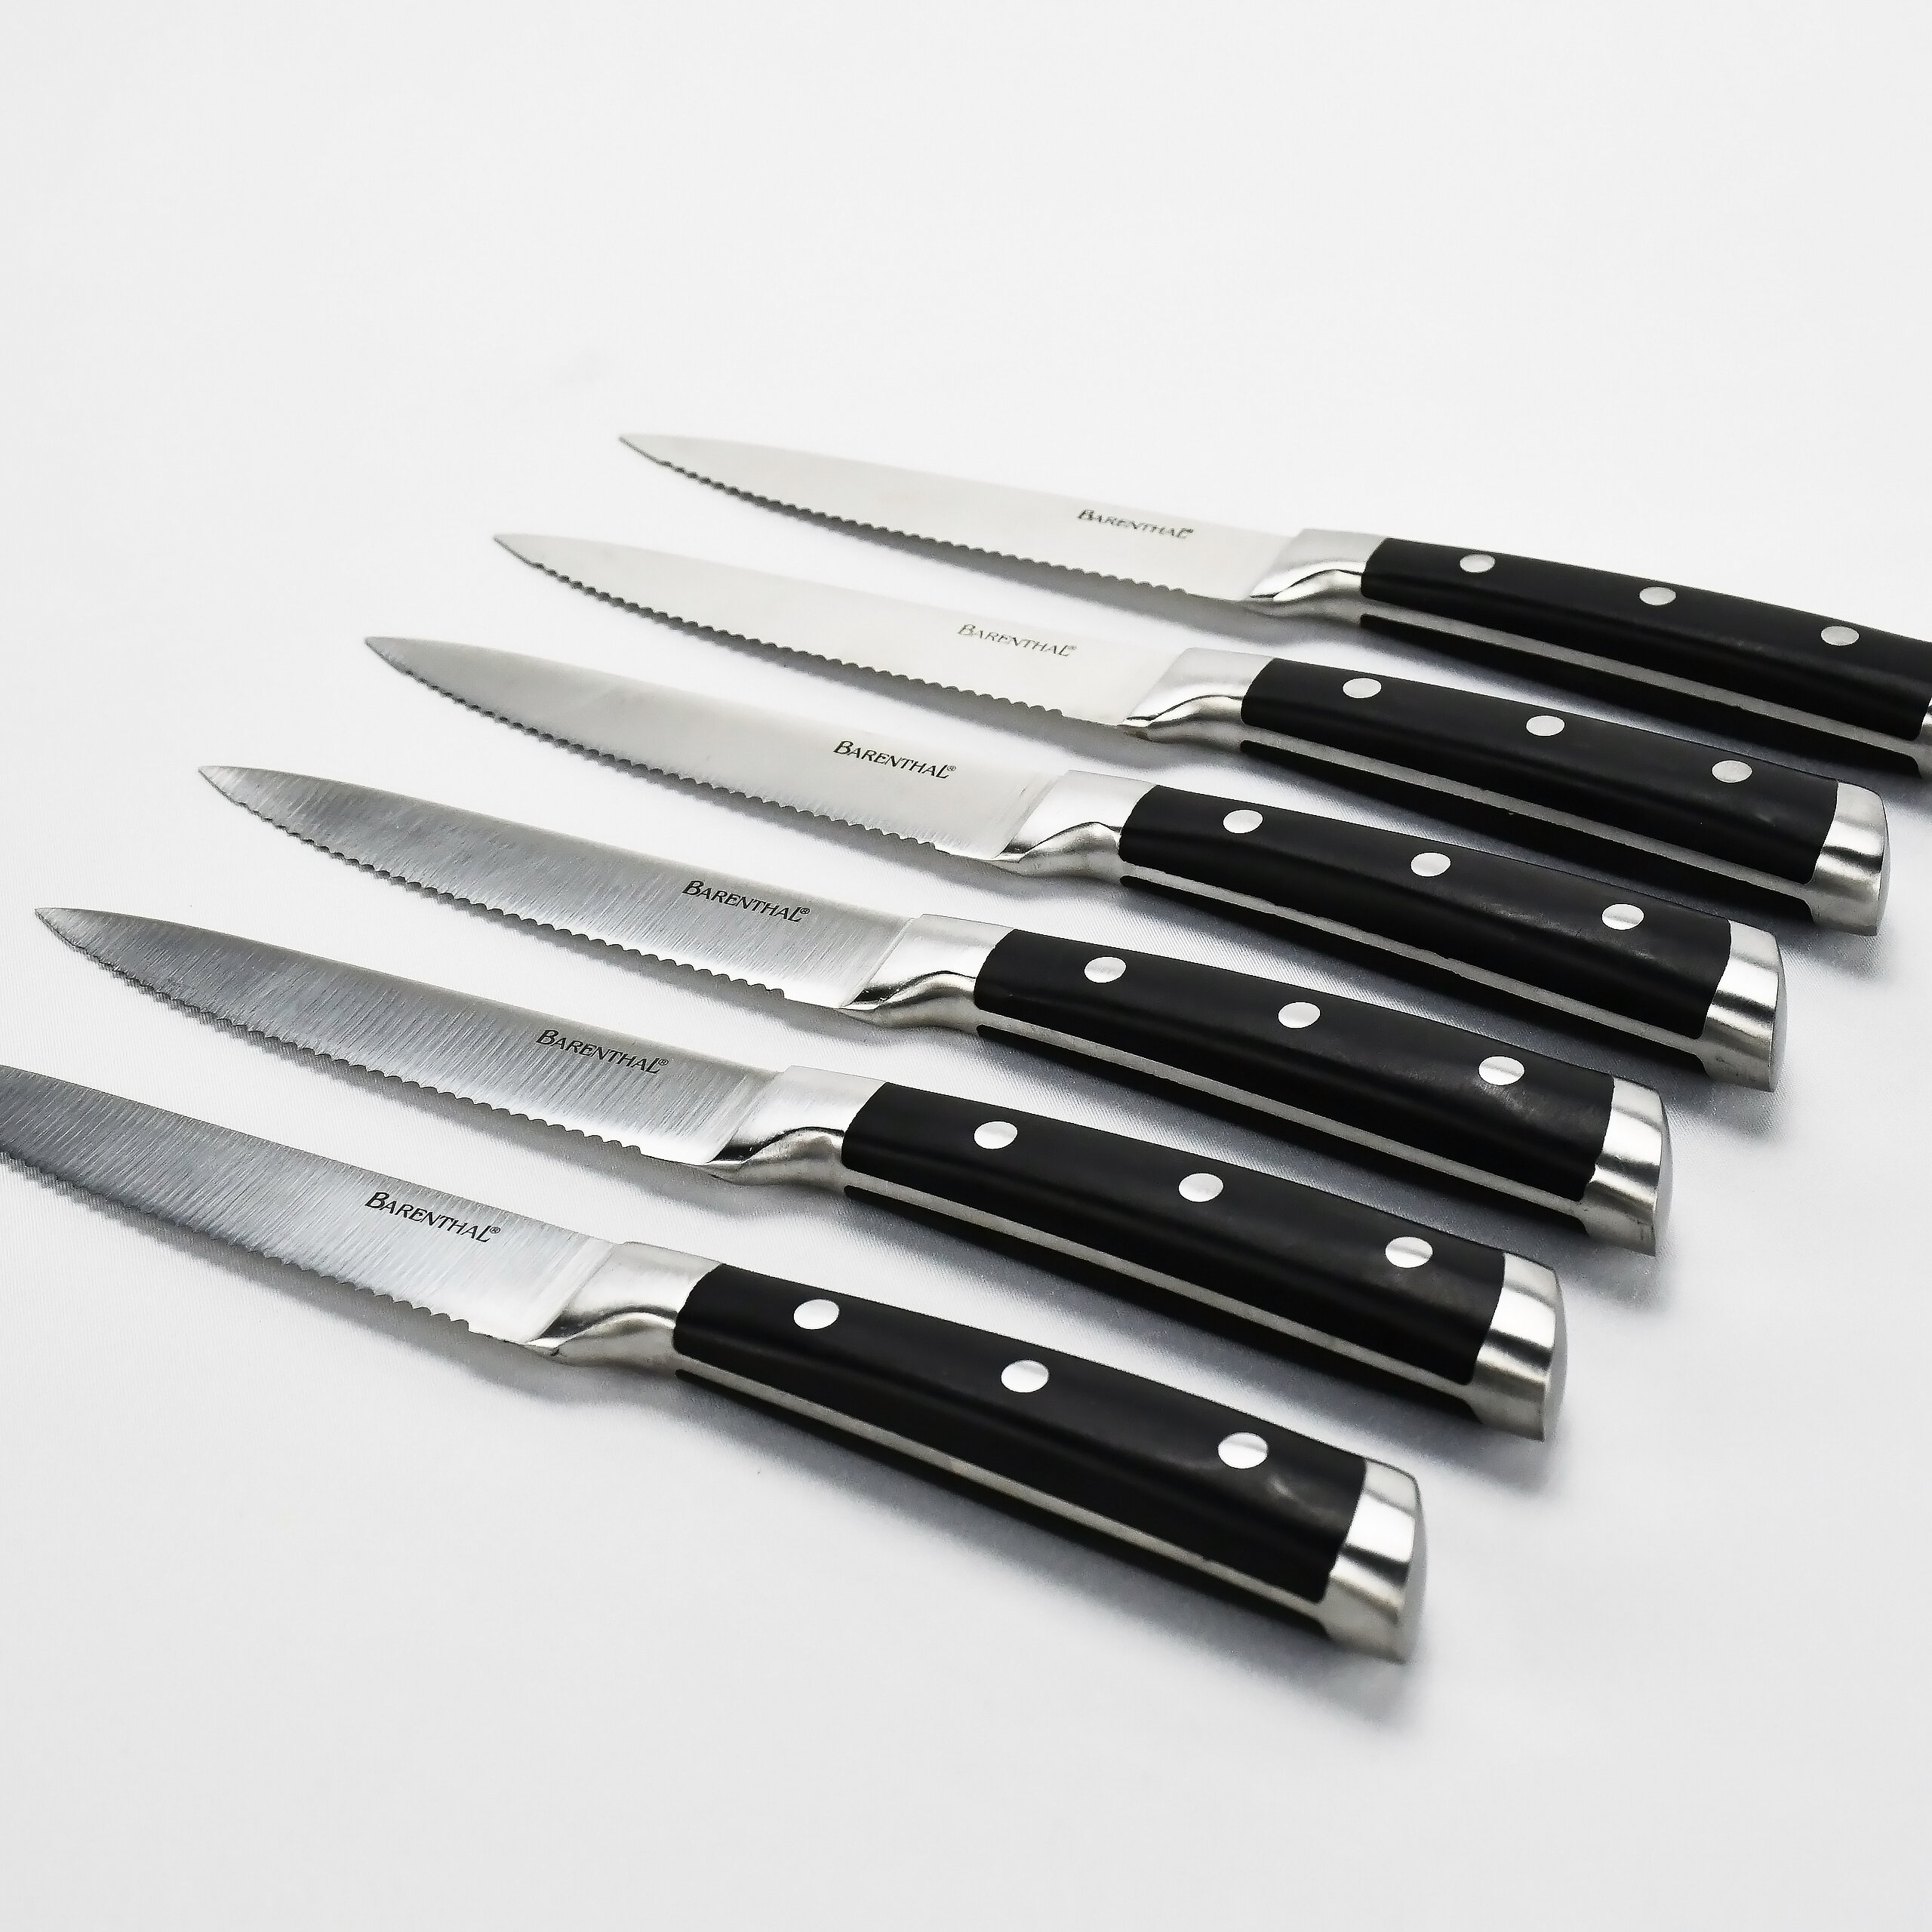 Stainless Steel Steak Knives-Steak Knives Set